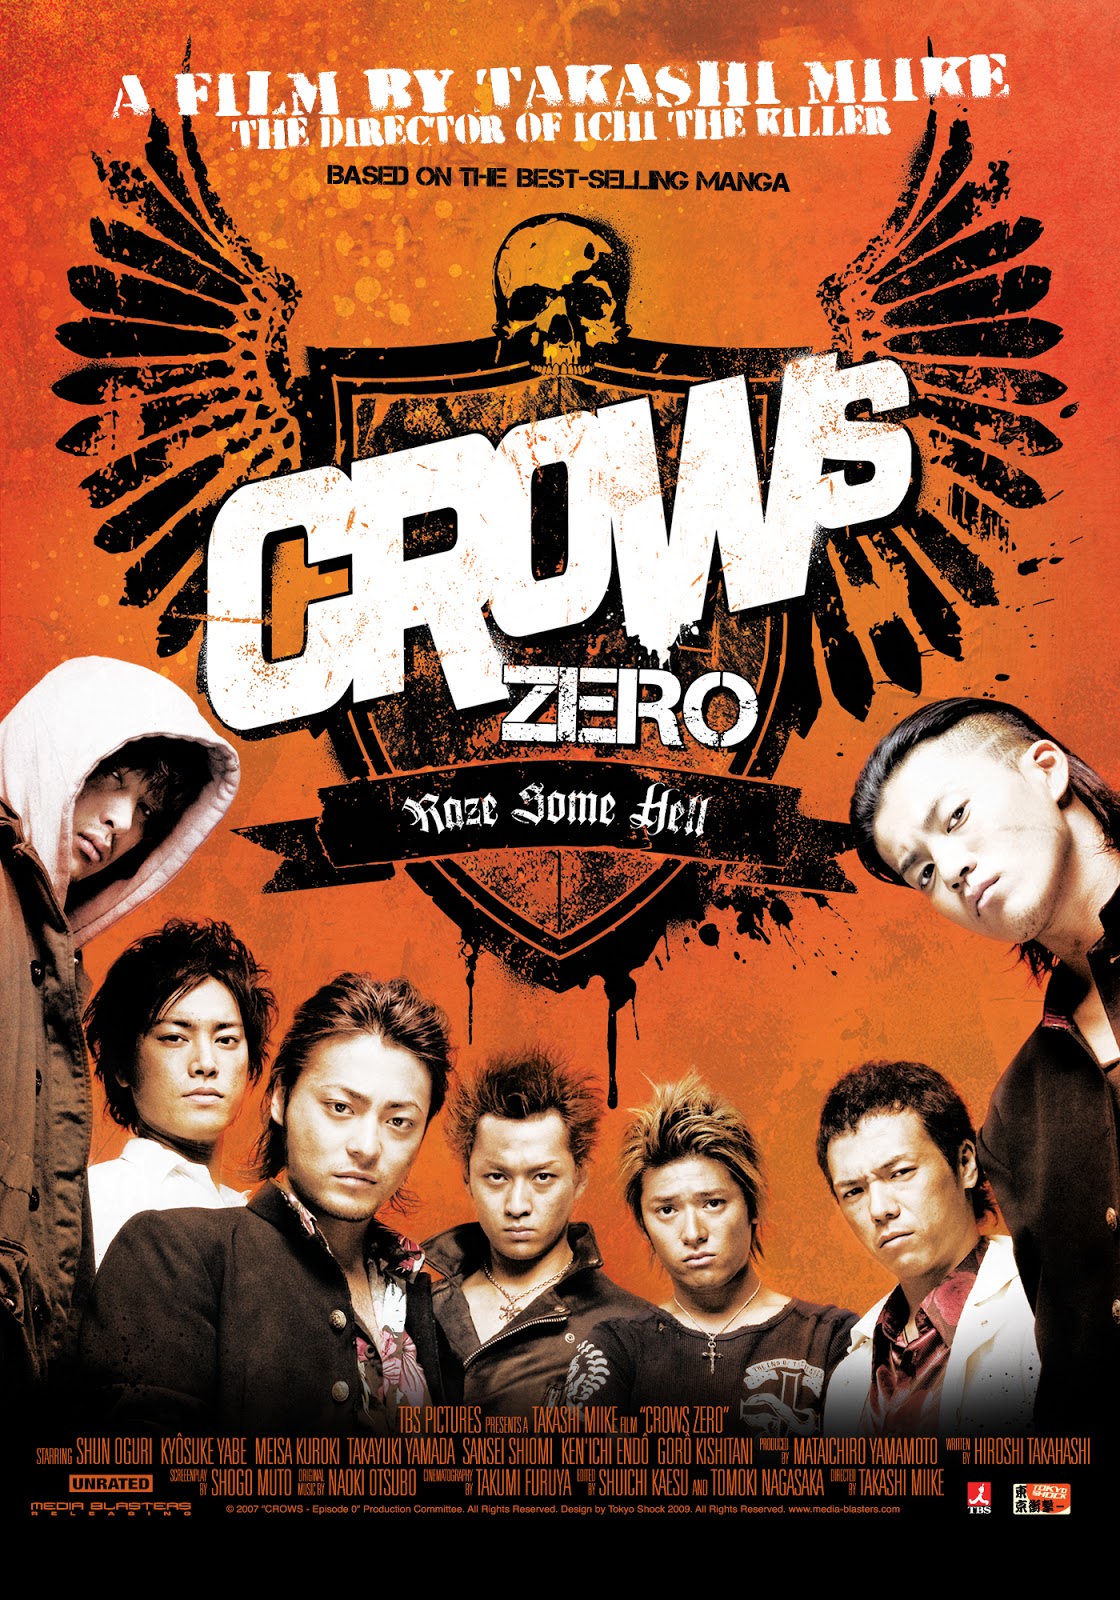 download crows zero 3 mp4 sub indonesia